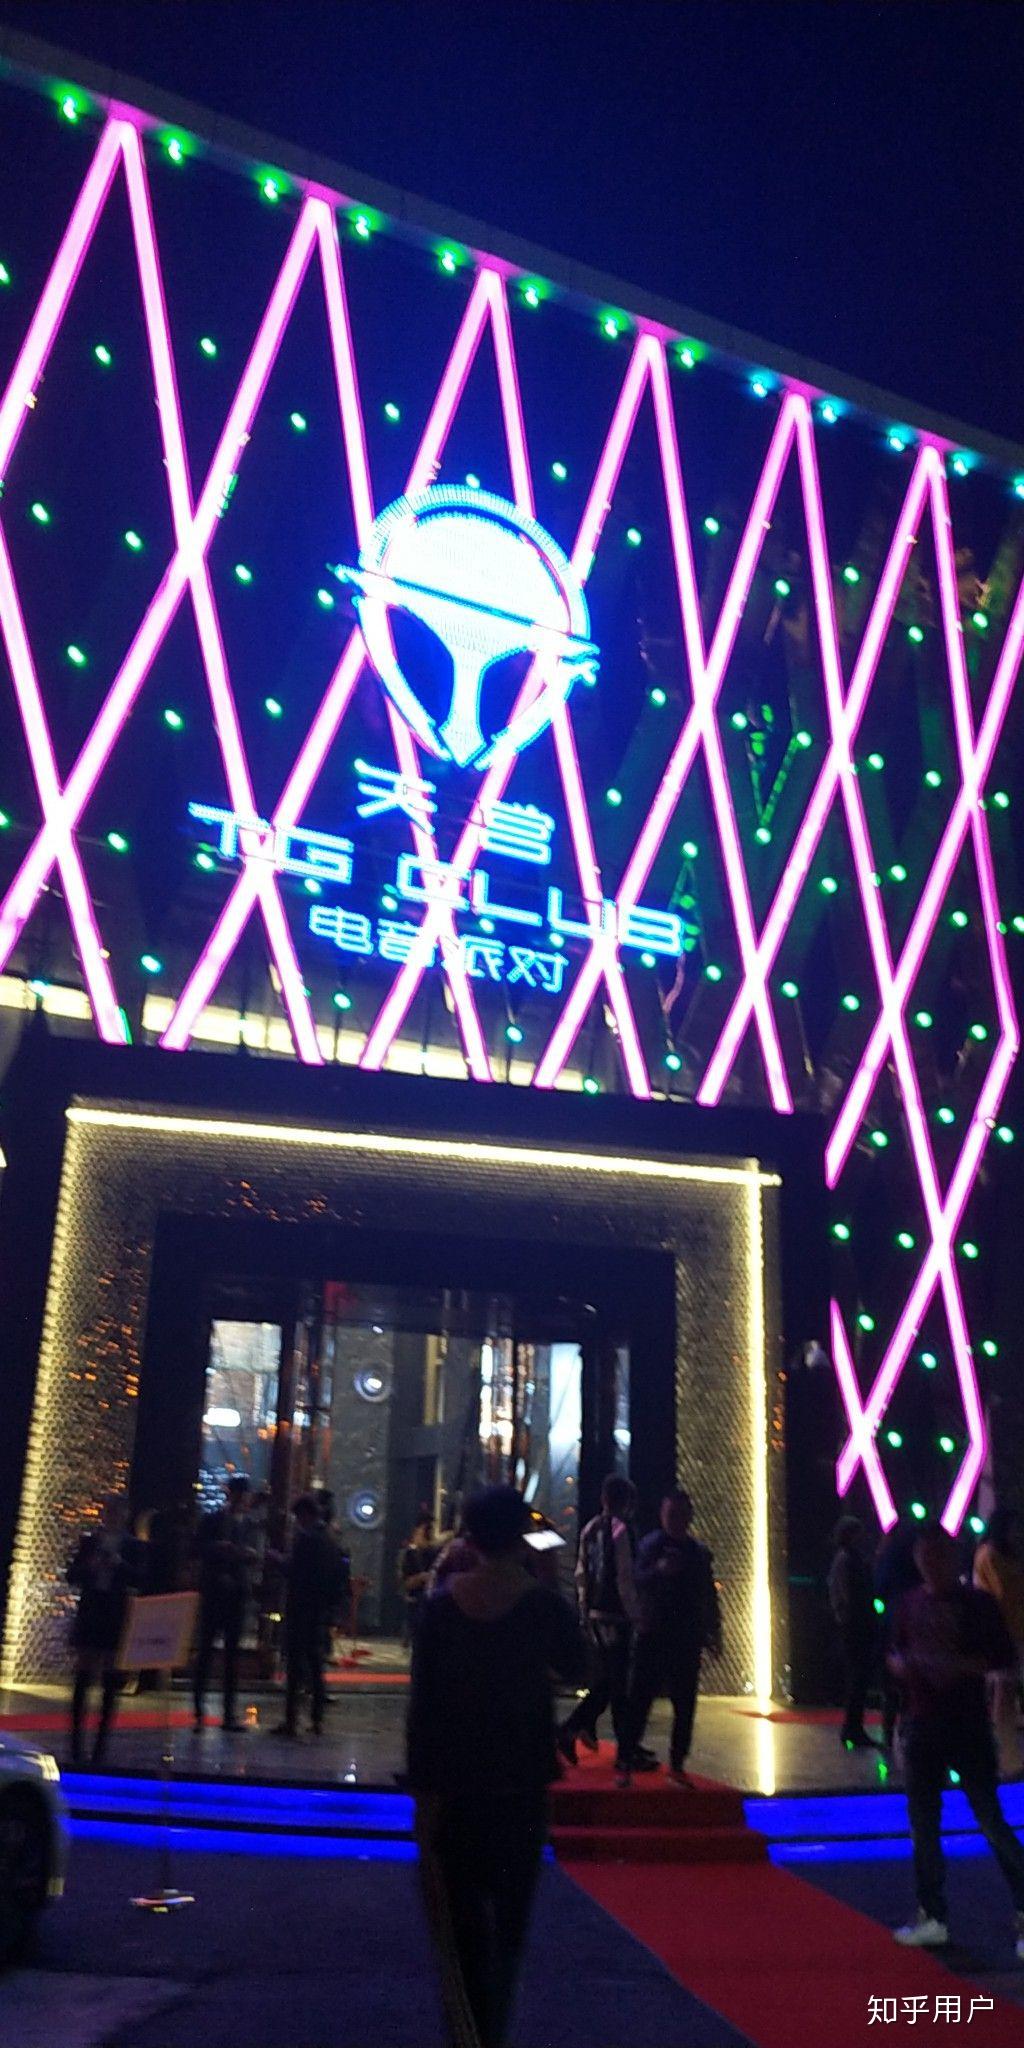 晋江市天宫酒吧图片